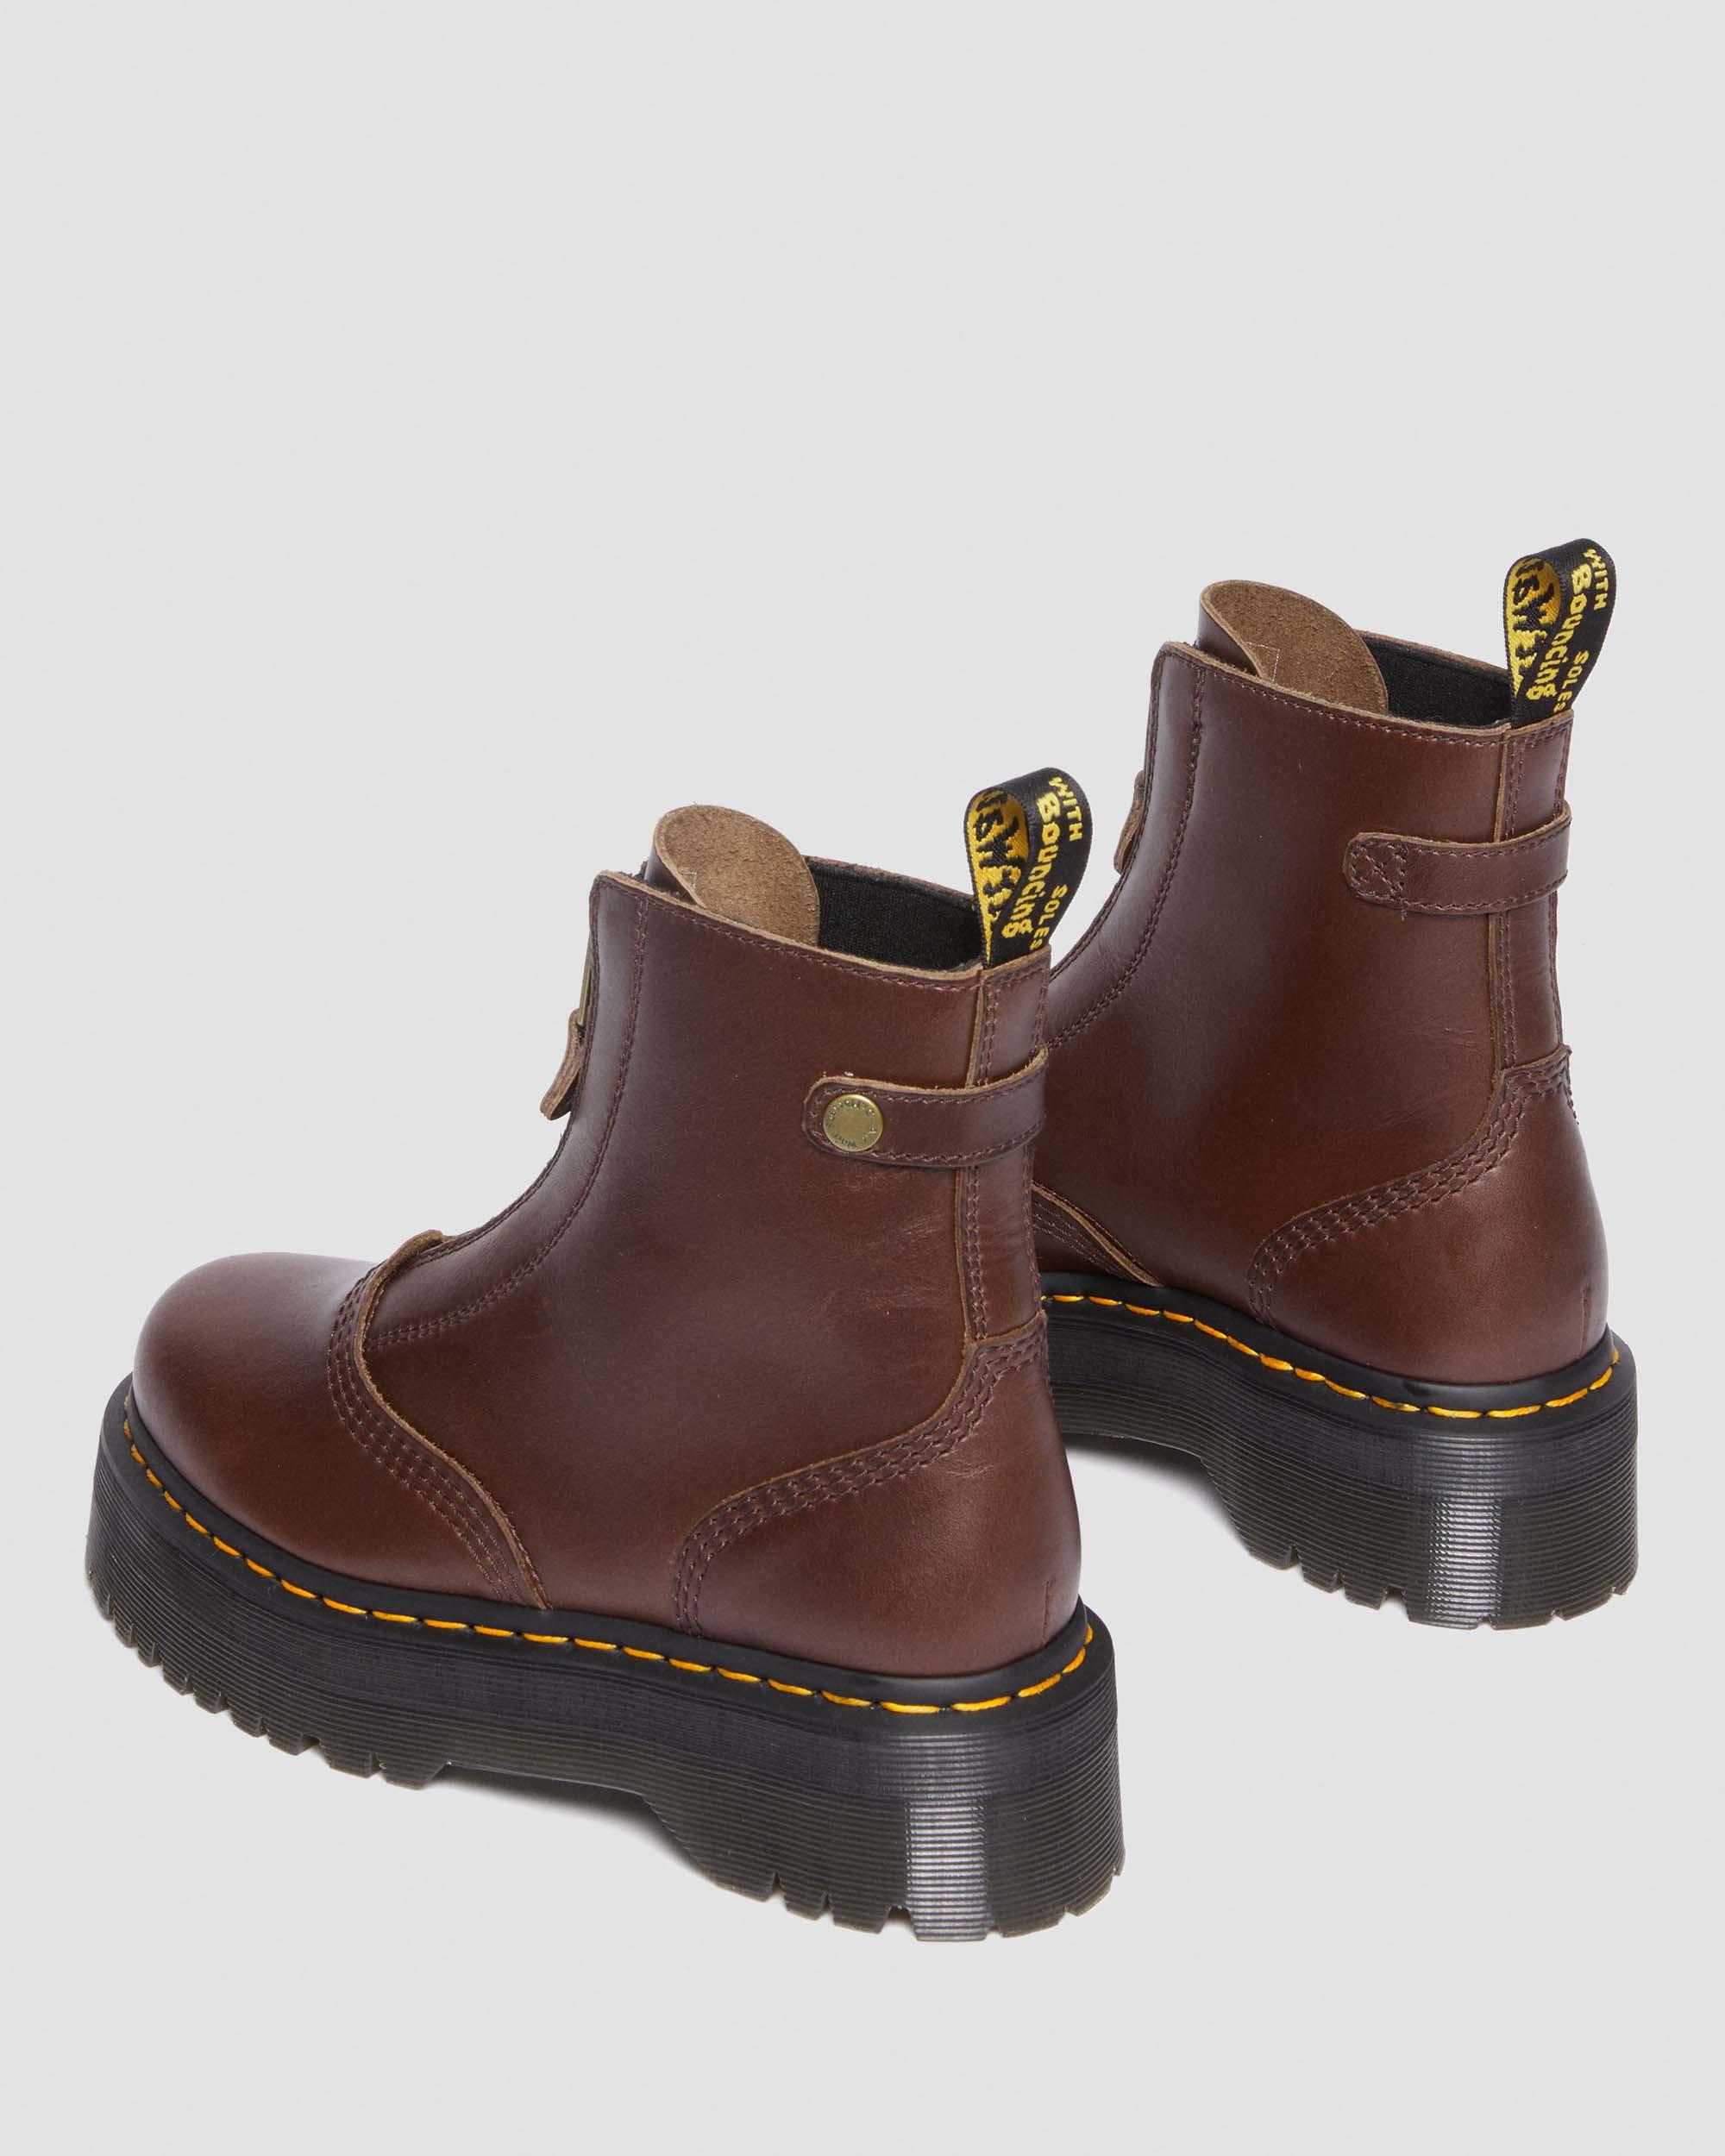 Jetta Platform Boots in Dark Brown